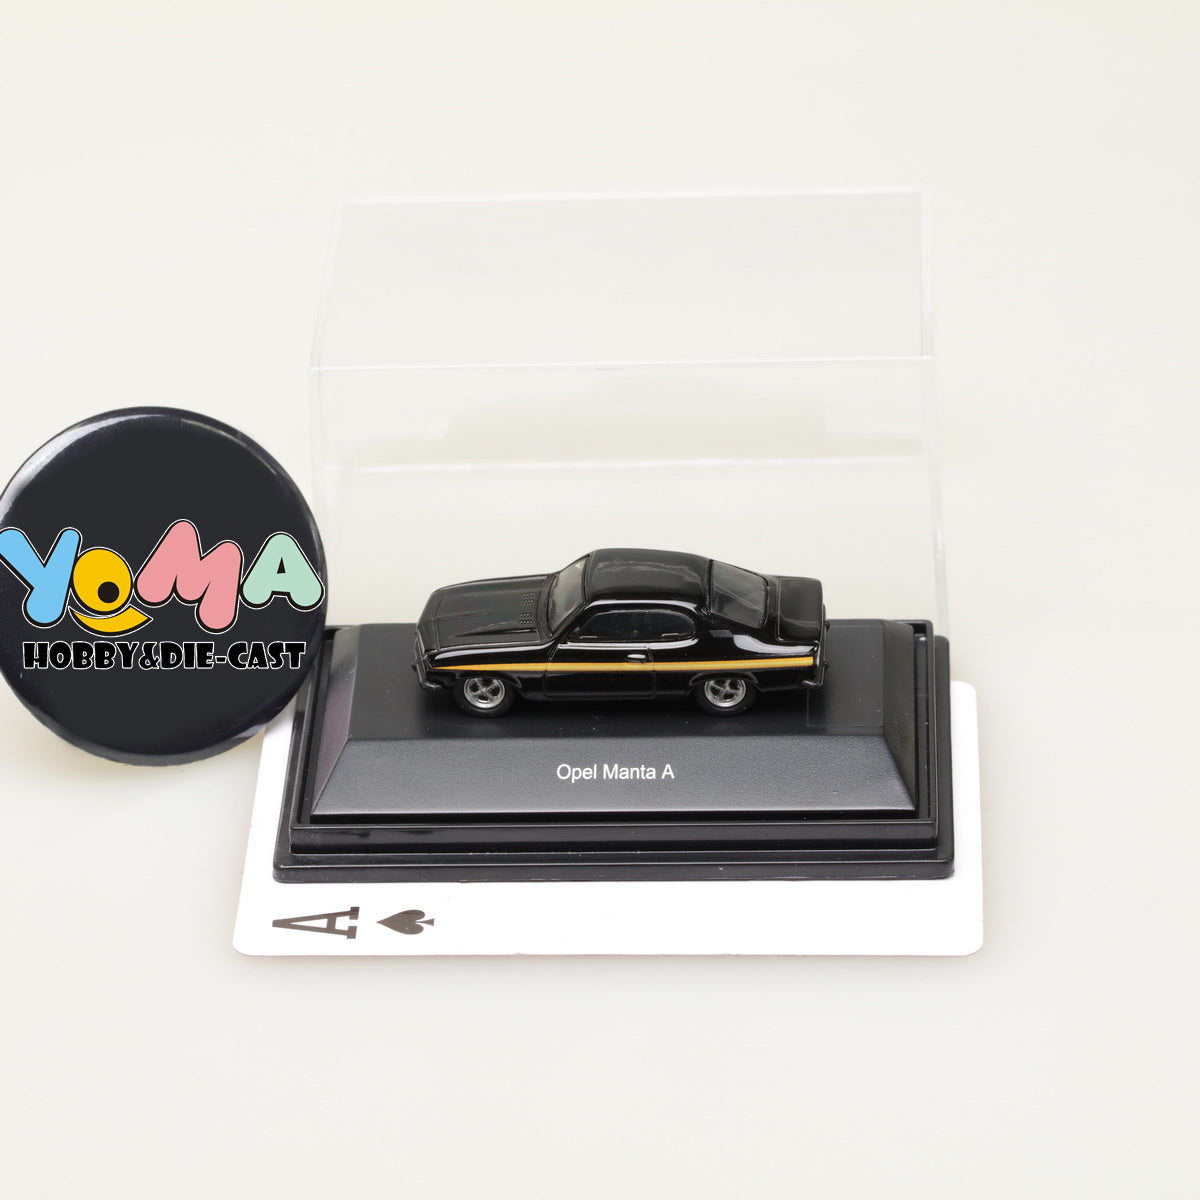 Schuco 1:87 Opel Manta A Black Magic 452628300